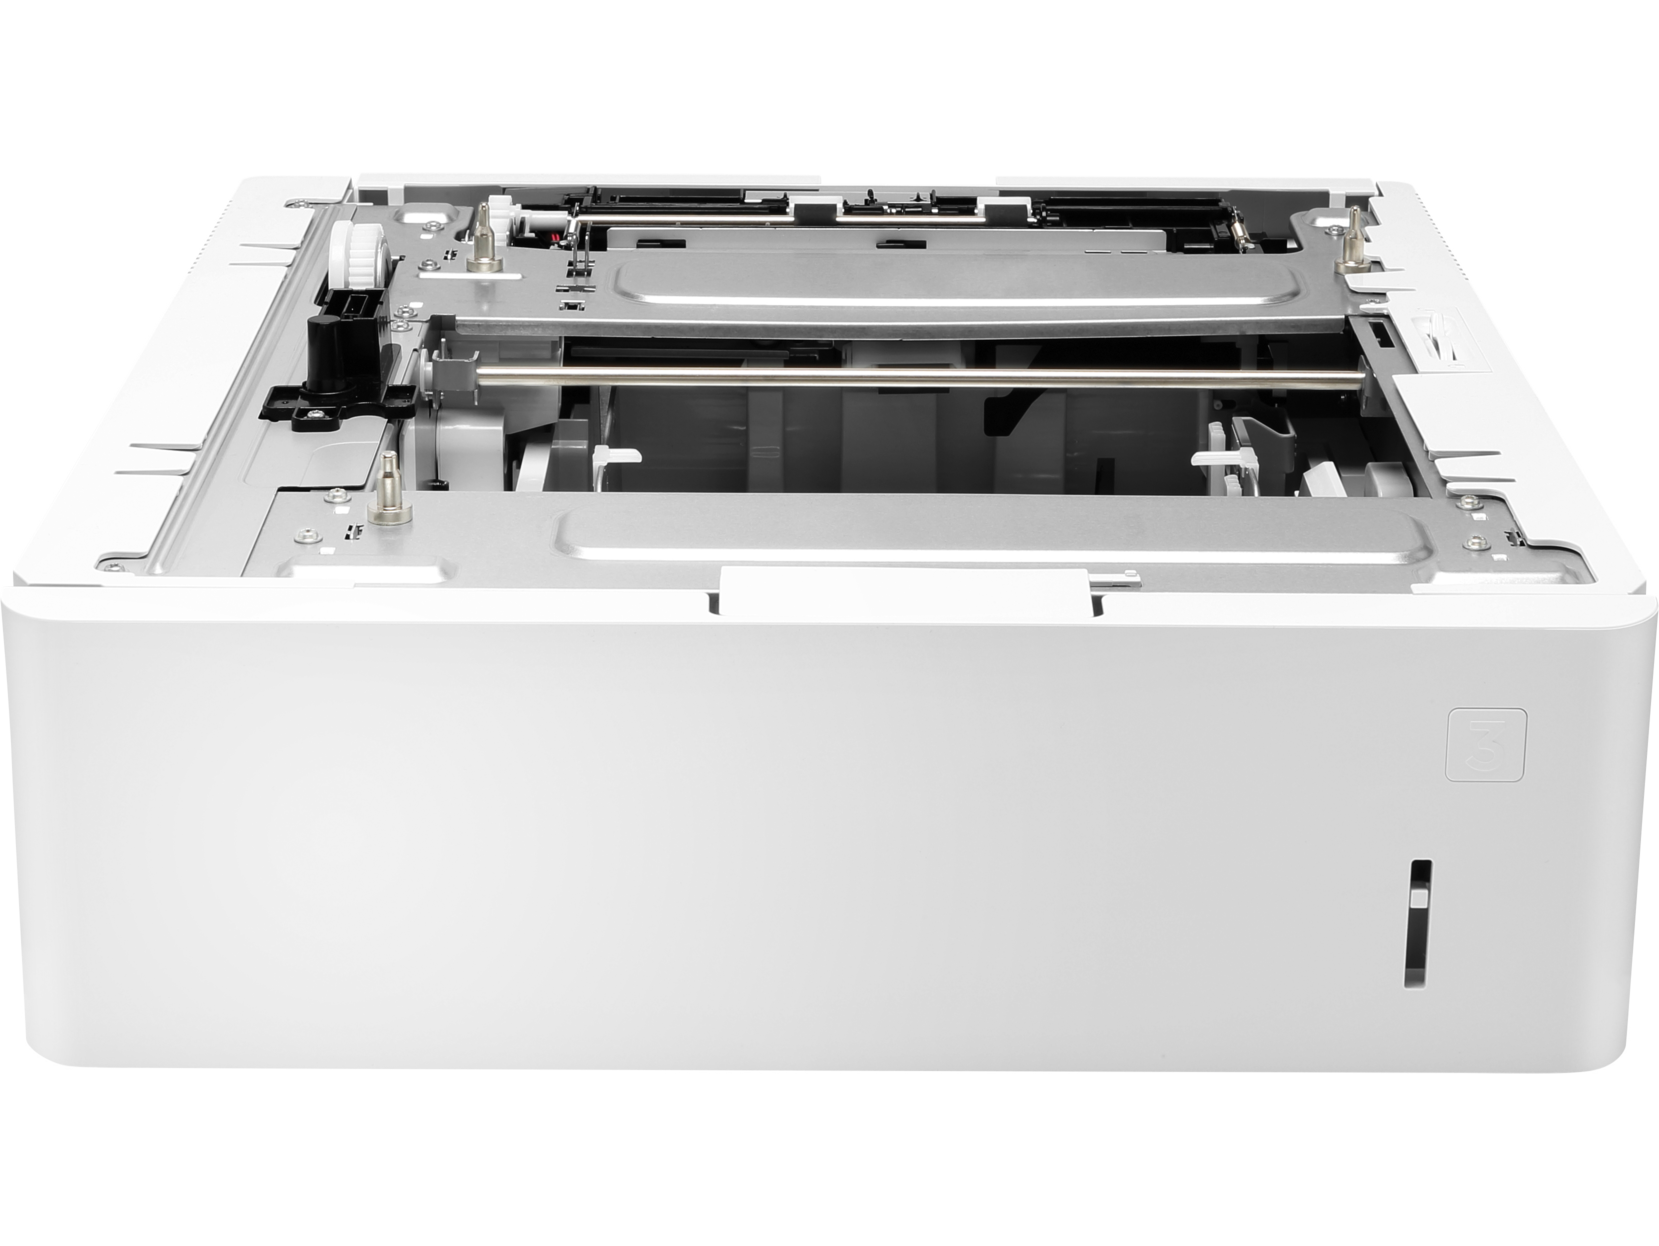 Zásobník papíru HP LaserJet na 550 listů